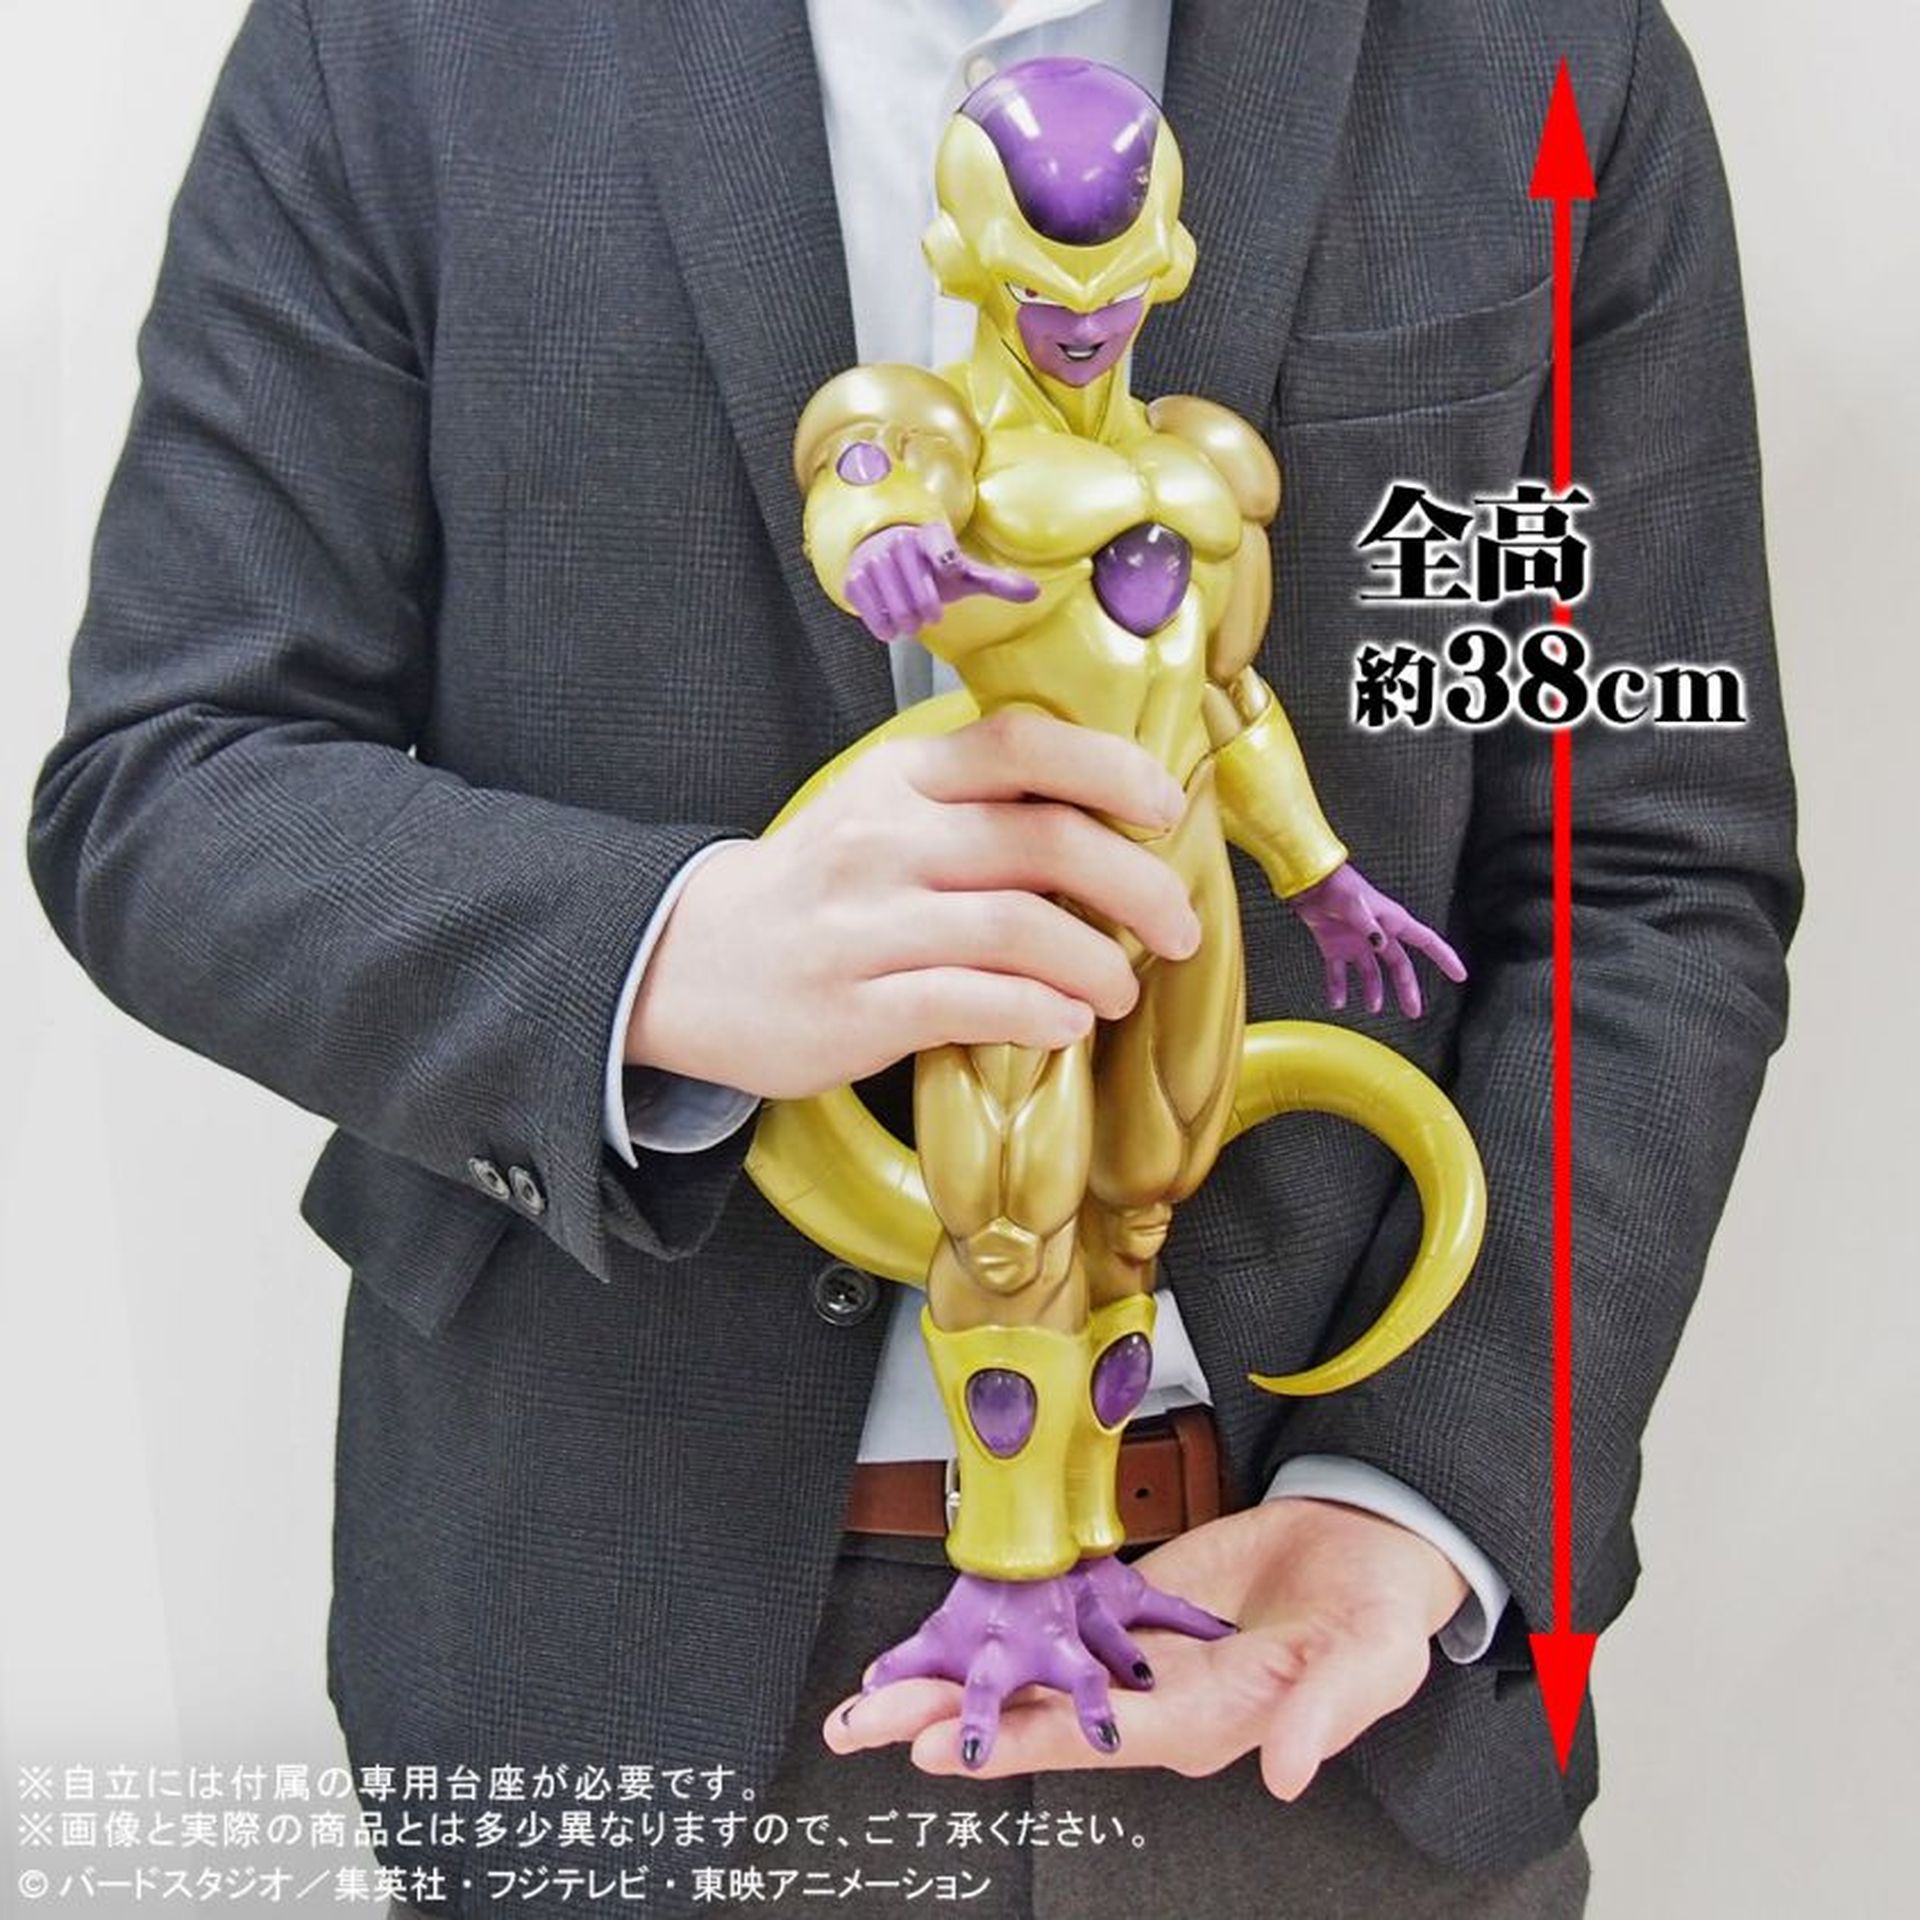 Dragon Ball - Así es la figura gigante de Golden Freezer de la línea Gigantic